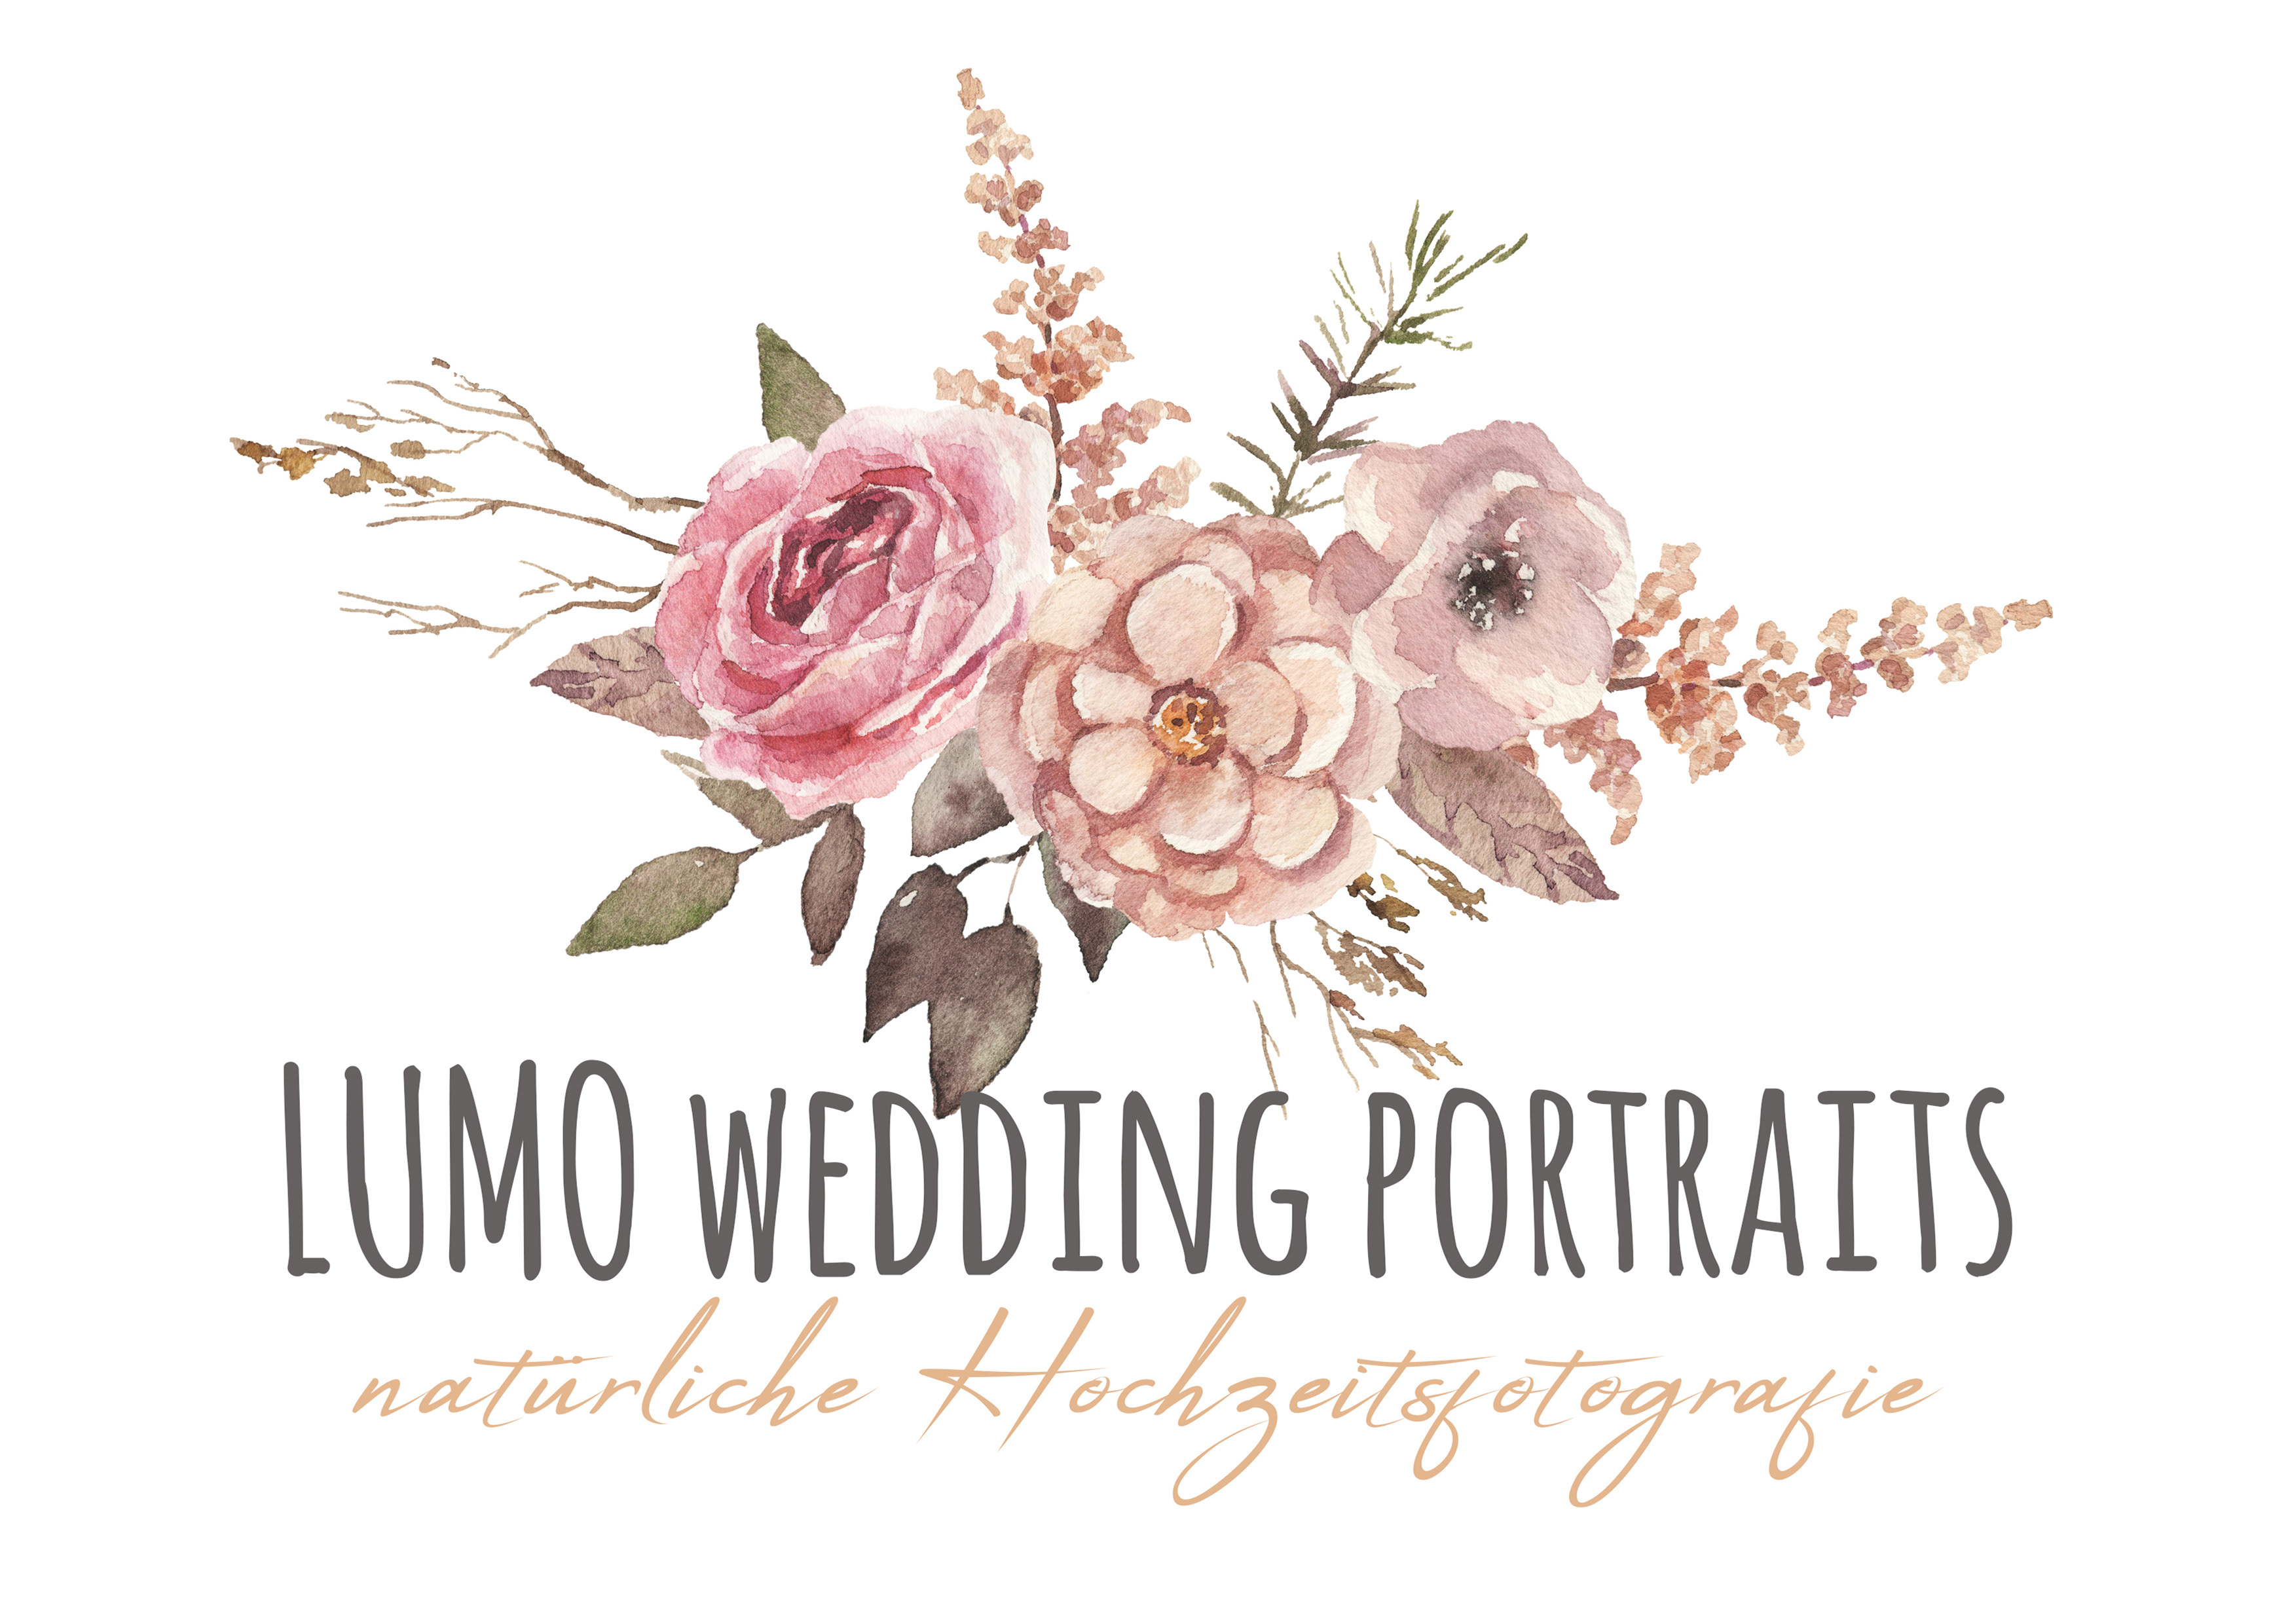 Lumo Wedding Portraits - natürliche Hochzeitsfotografie